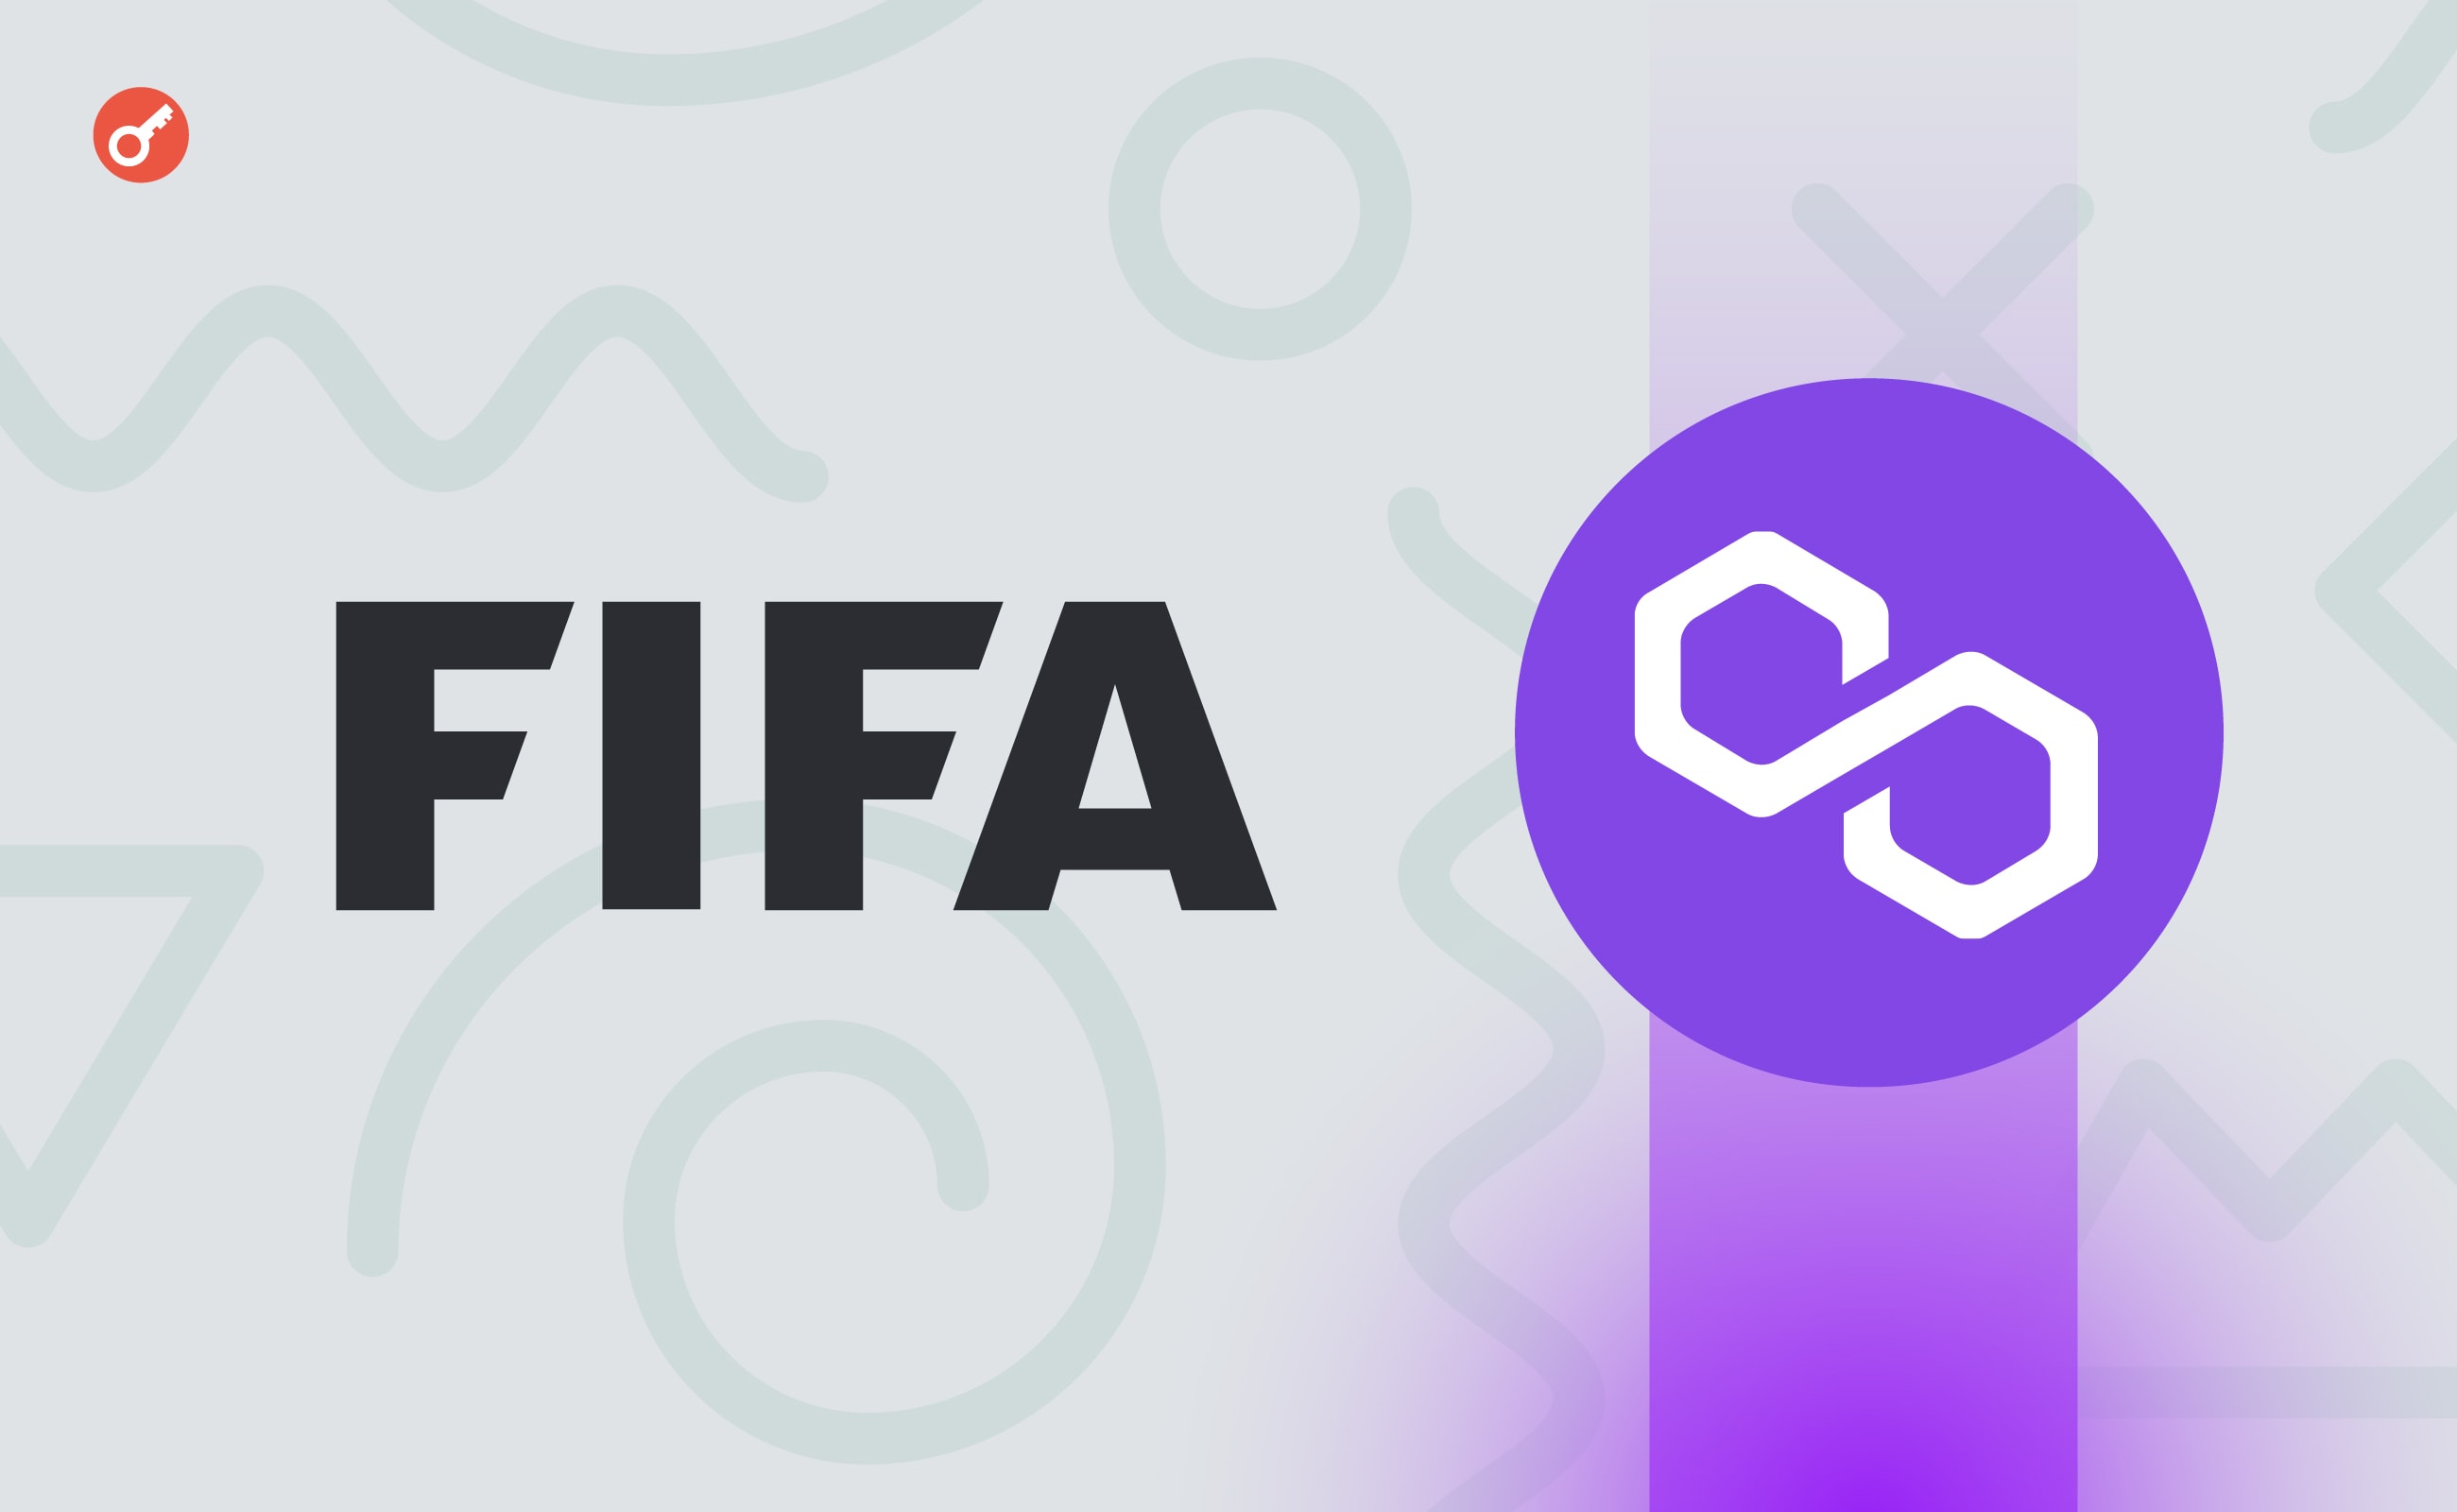 FIFA выпустит новую NFT-коллекцию и проведет розыгрыш билетов на ЧМ-2026. Заглавный коллаж новости.